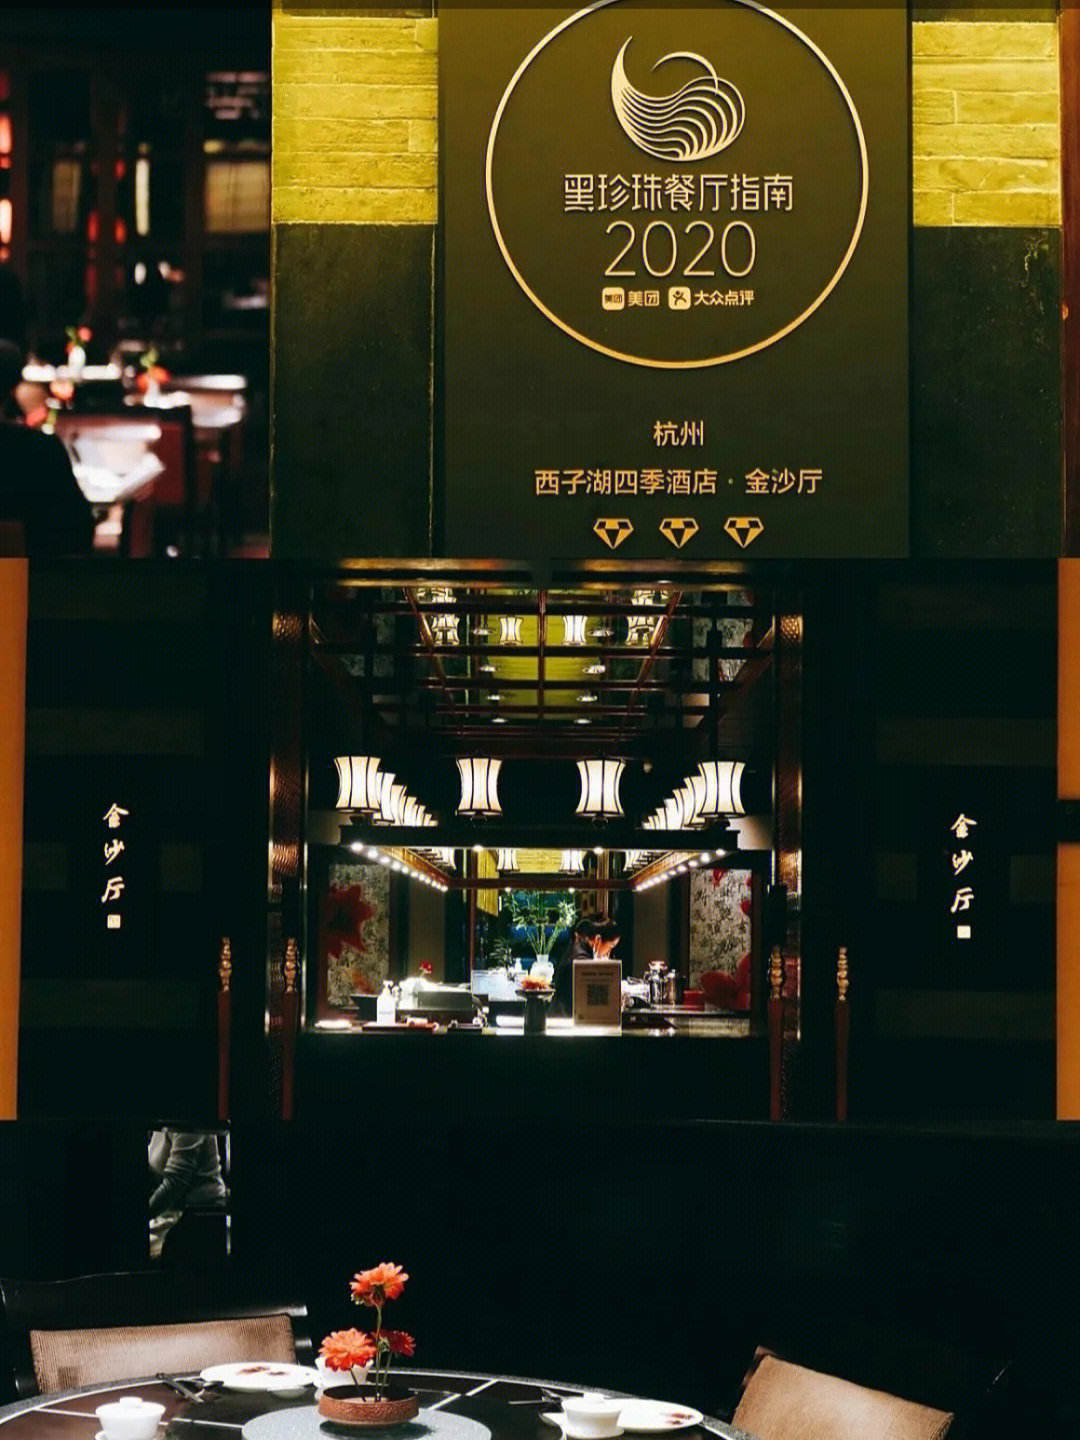 黑珍珠餐厅指南2020图片